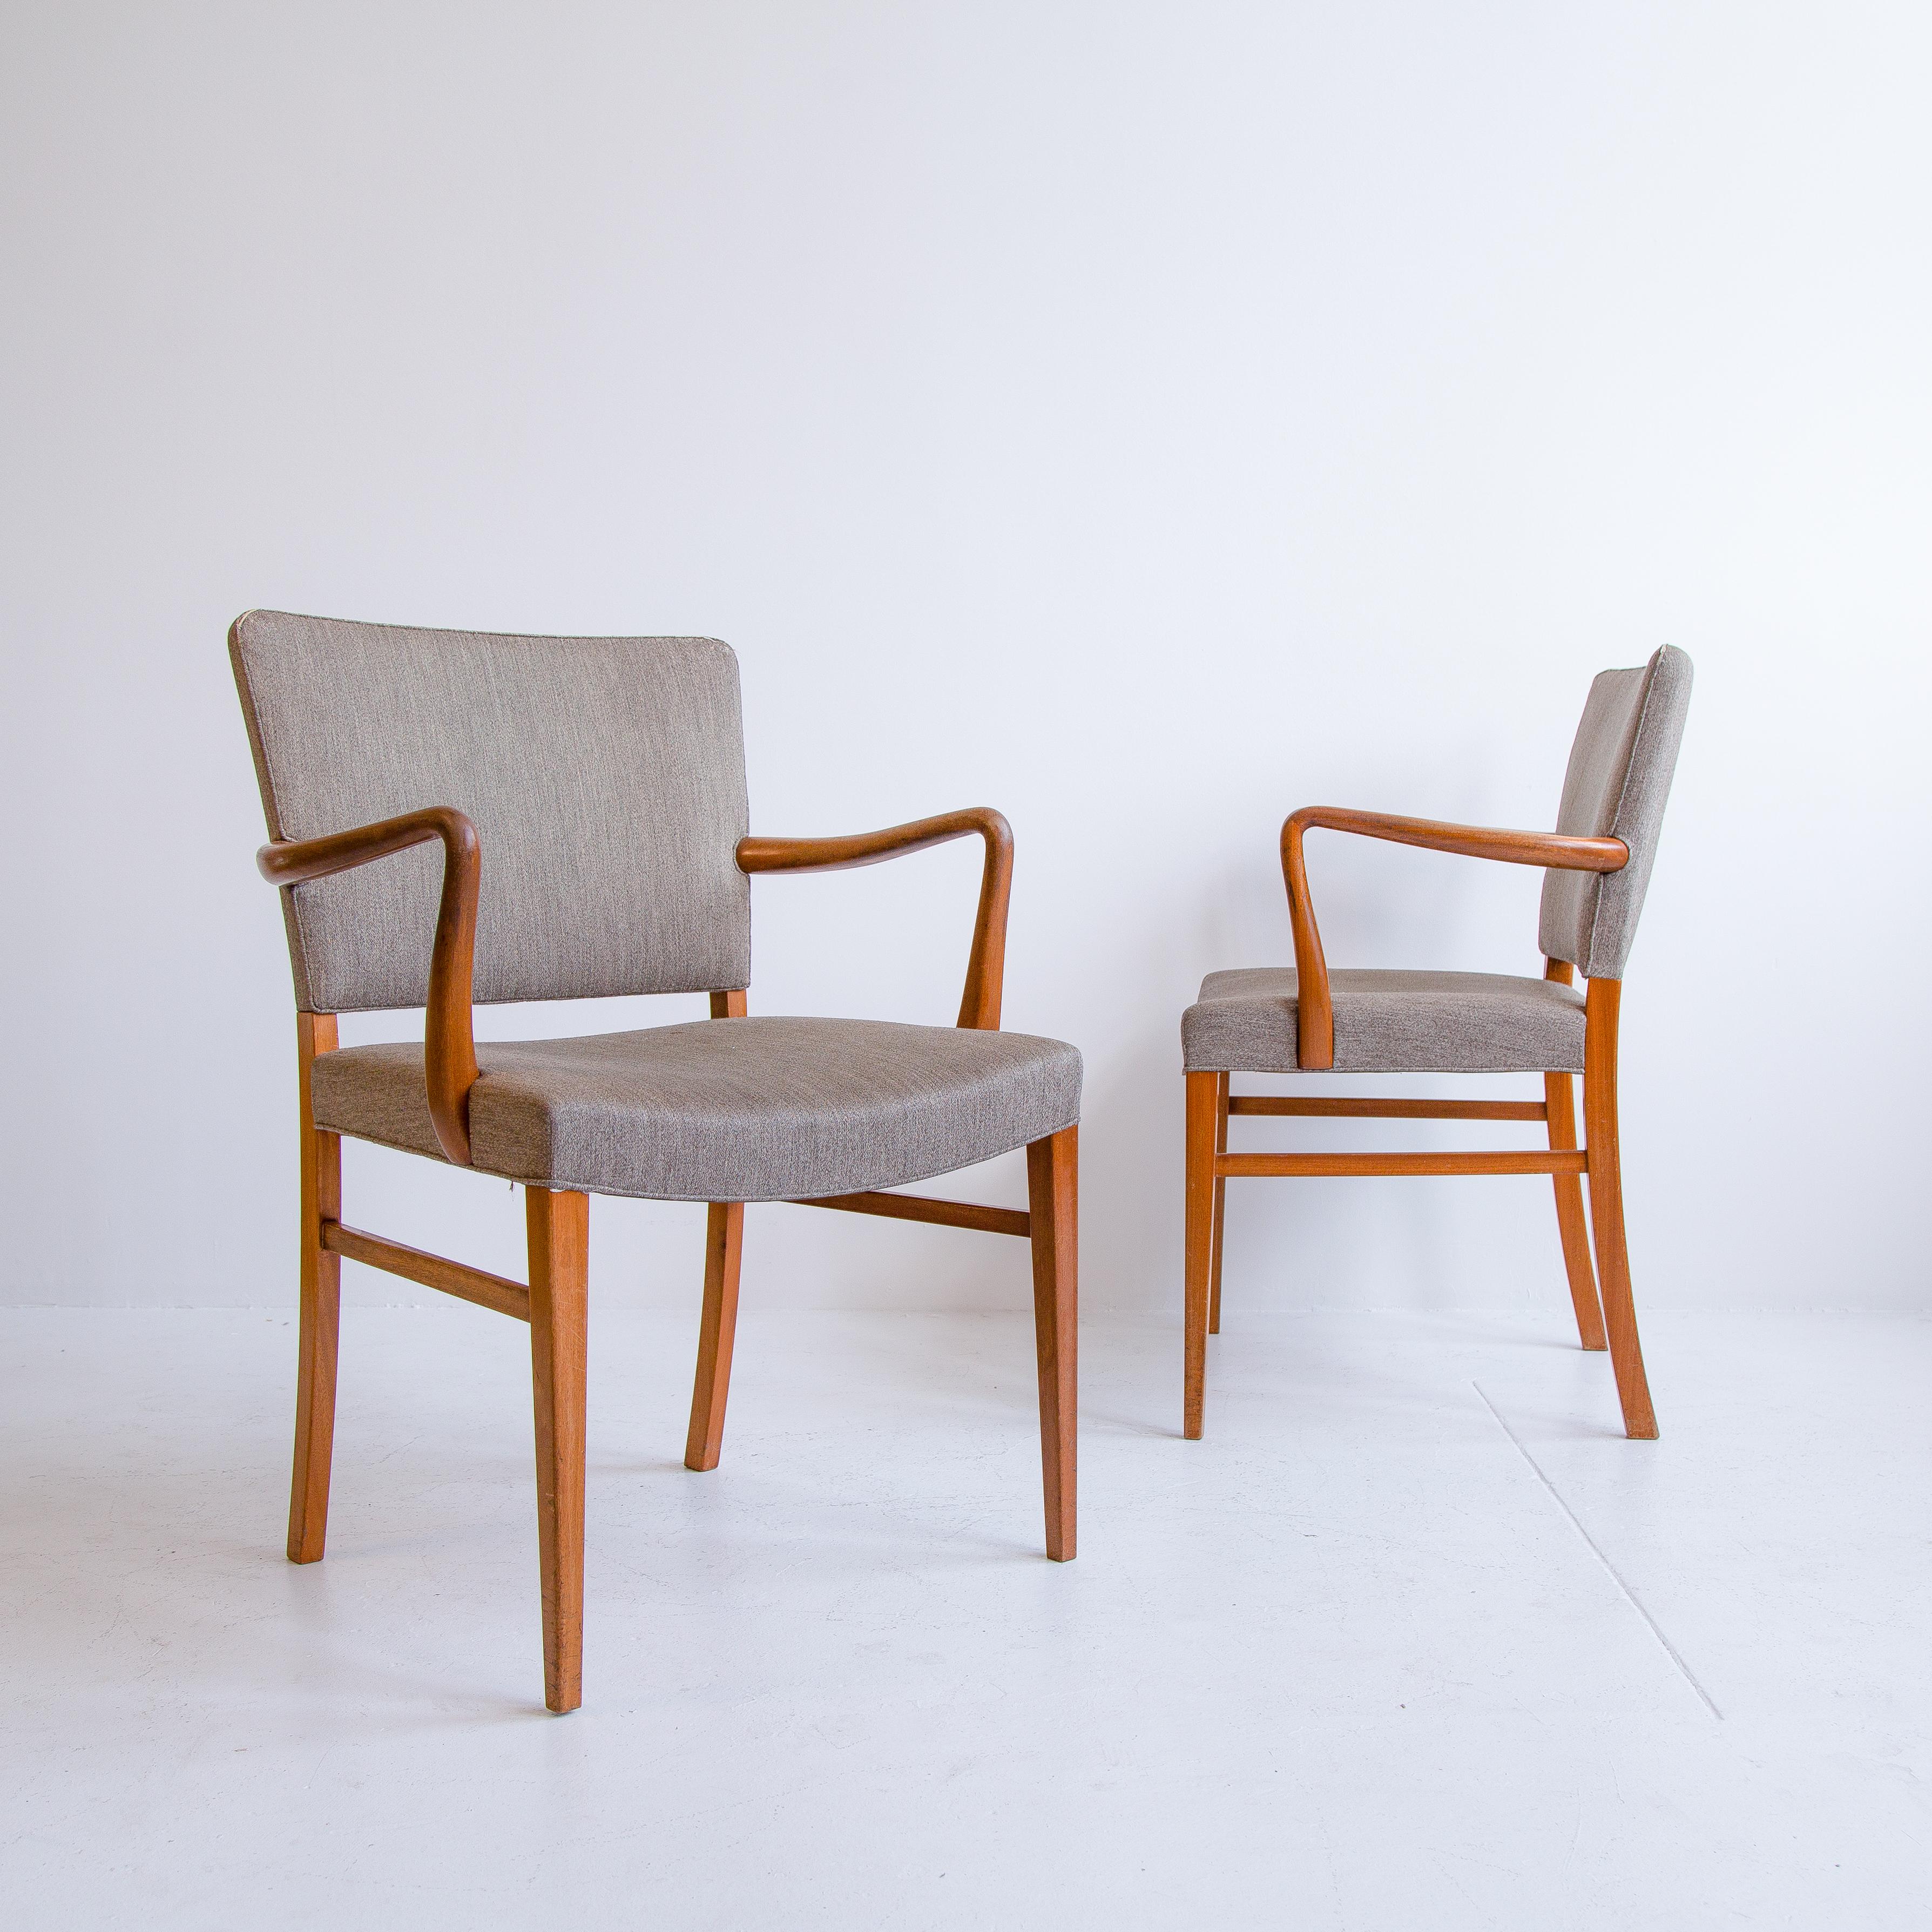 Ein Paar passender, von Ole Wanscher entworfener Vintage-Sessel, hergestellt von A.J. Iversen in Dänemark in den 1950er Jahren. Diese Stühle haben einen Rahmen aus massivem Buchenholz mit fließend geschwungenen Arm- und Rückenlehnen. Der Holzrahmen